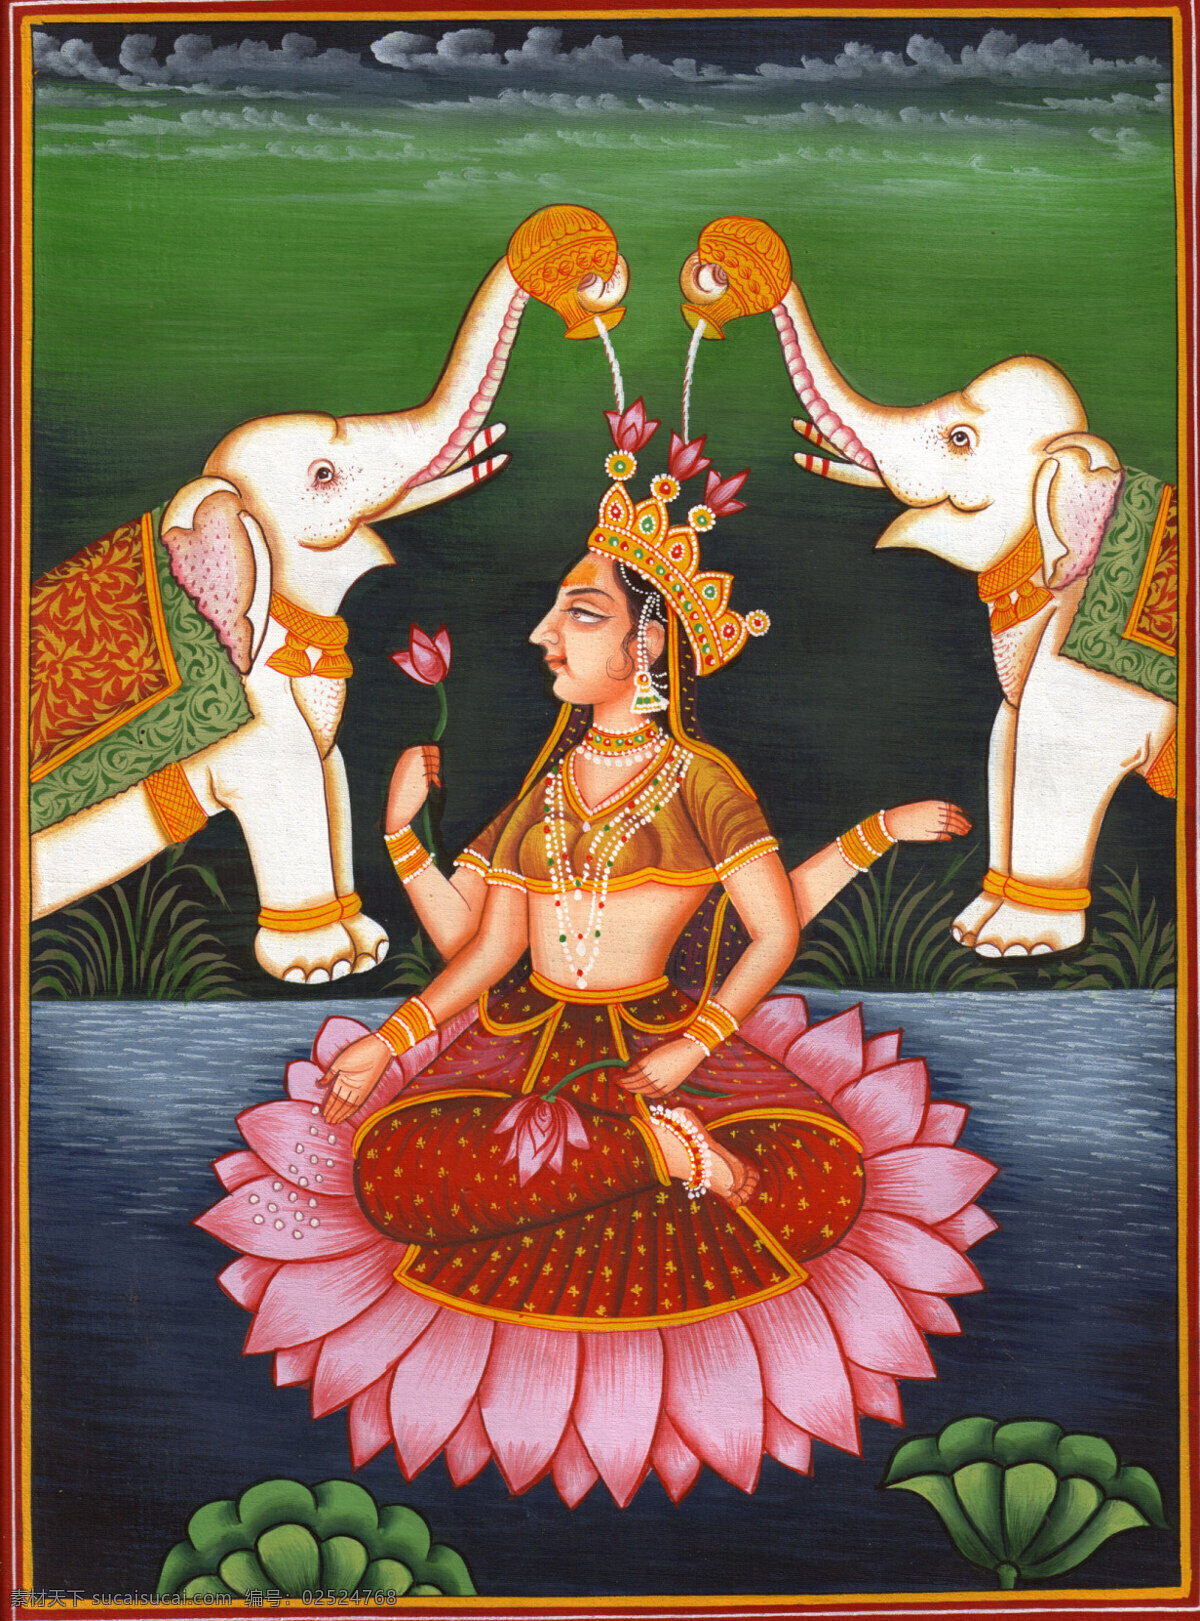 印度宗教 人物 神像 象神 宗教信仰 宗教艺术 文化艺术 传统文化